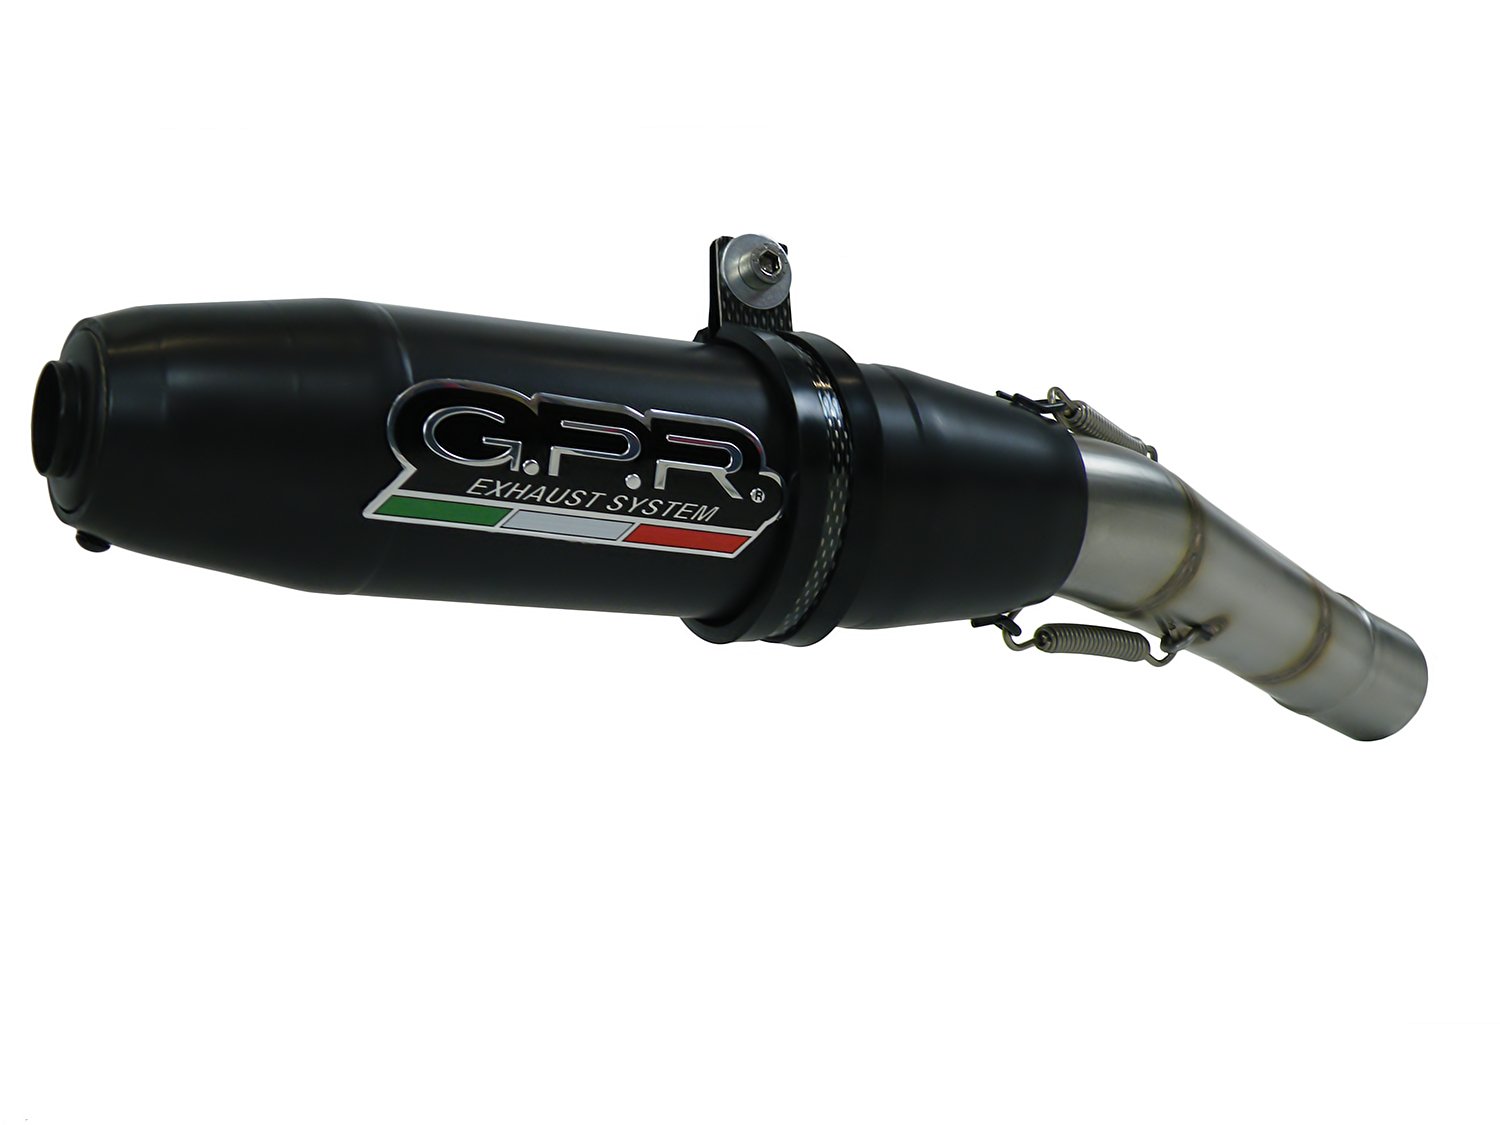 GPR Italien D.52.Dene Anlage semicompleto zugelassen mit Doppel Terminal Ducati 998 – R – FE Doppio 2001/04 mit Body von GPR Italia